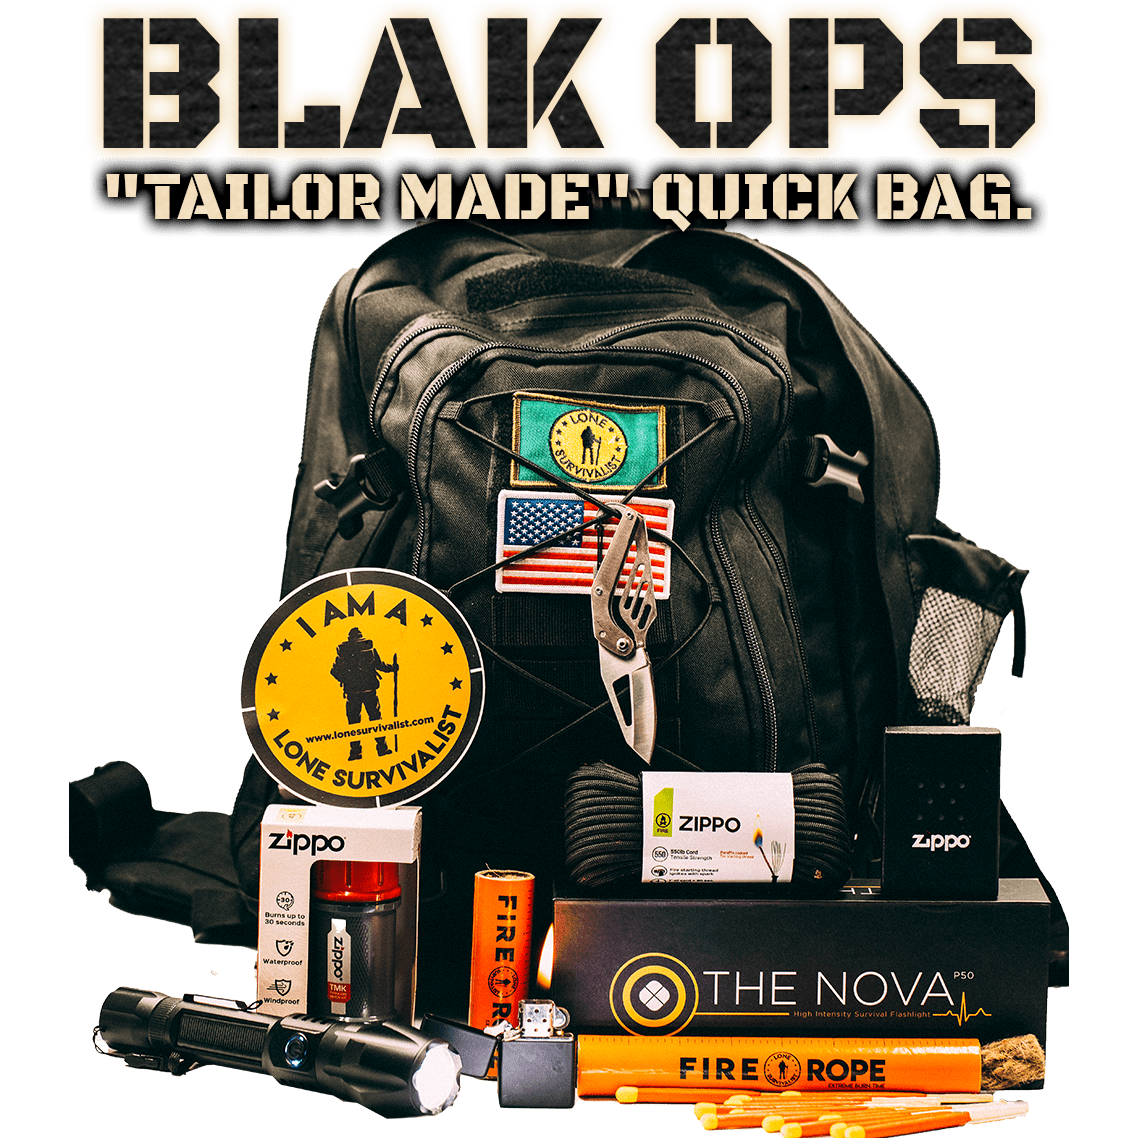 Blak Ops Tailor Made Quick Bag